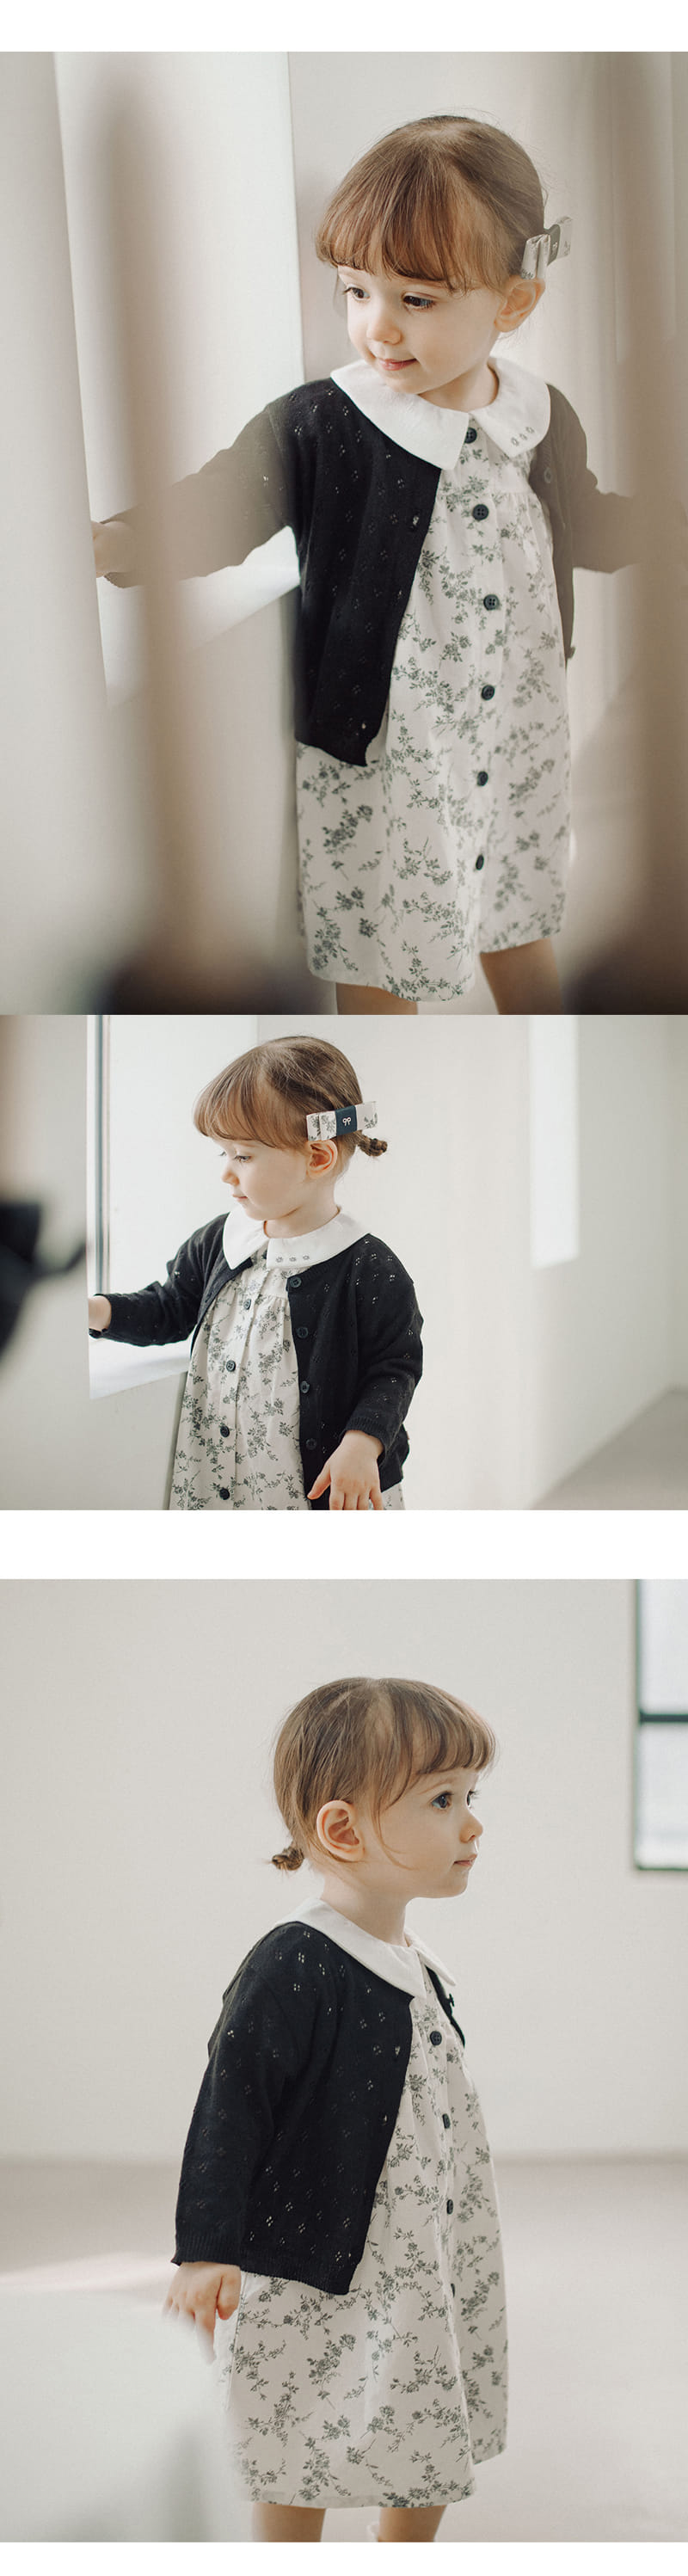 Kids Clara - Korean Baby Fashion - #babyoninstagram - Nori Knit Baby Cardigan - 2